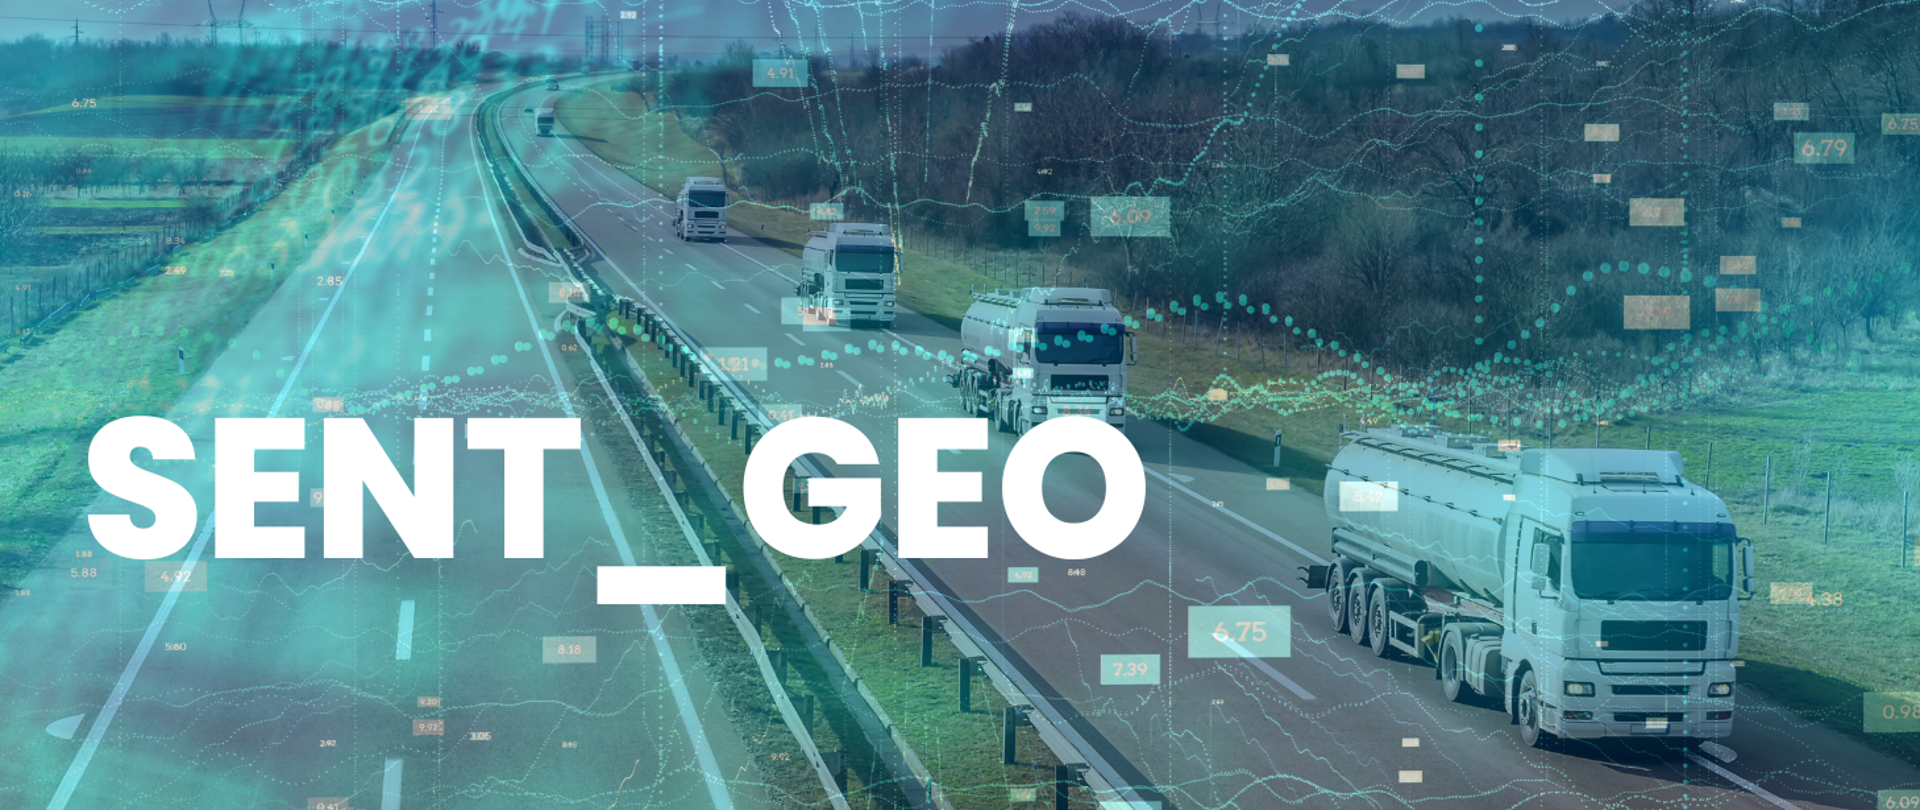 Ilustracja przedstawiająca zdjęcie autostrady i jadących po niej kilku ciężarówek. Na jego tle umieszczono półprzezroczyste elementy graficzne: ciągi liczb i wykresy. Na pierwszym planie po lewej stronie duży biały napis: SENT GEO.